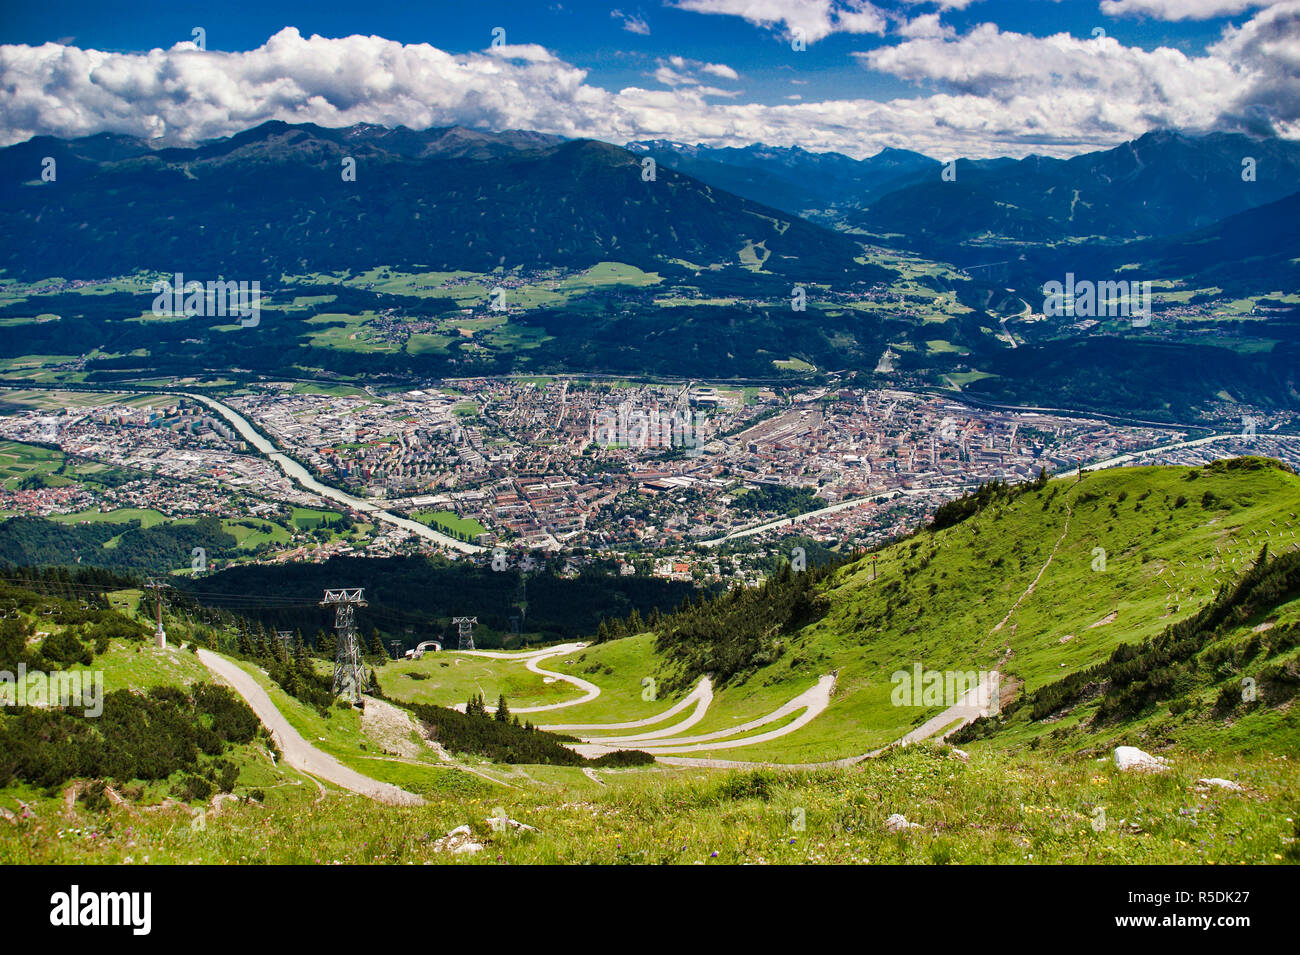 Una pittoresca vista panoramica della capitale tirolese di Innsbruck, Austria - embedded nelle montagne delle Alpi - catturato dalla sommità di Seegrube Foto Stock